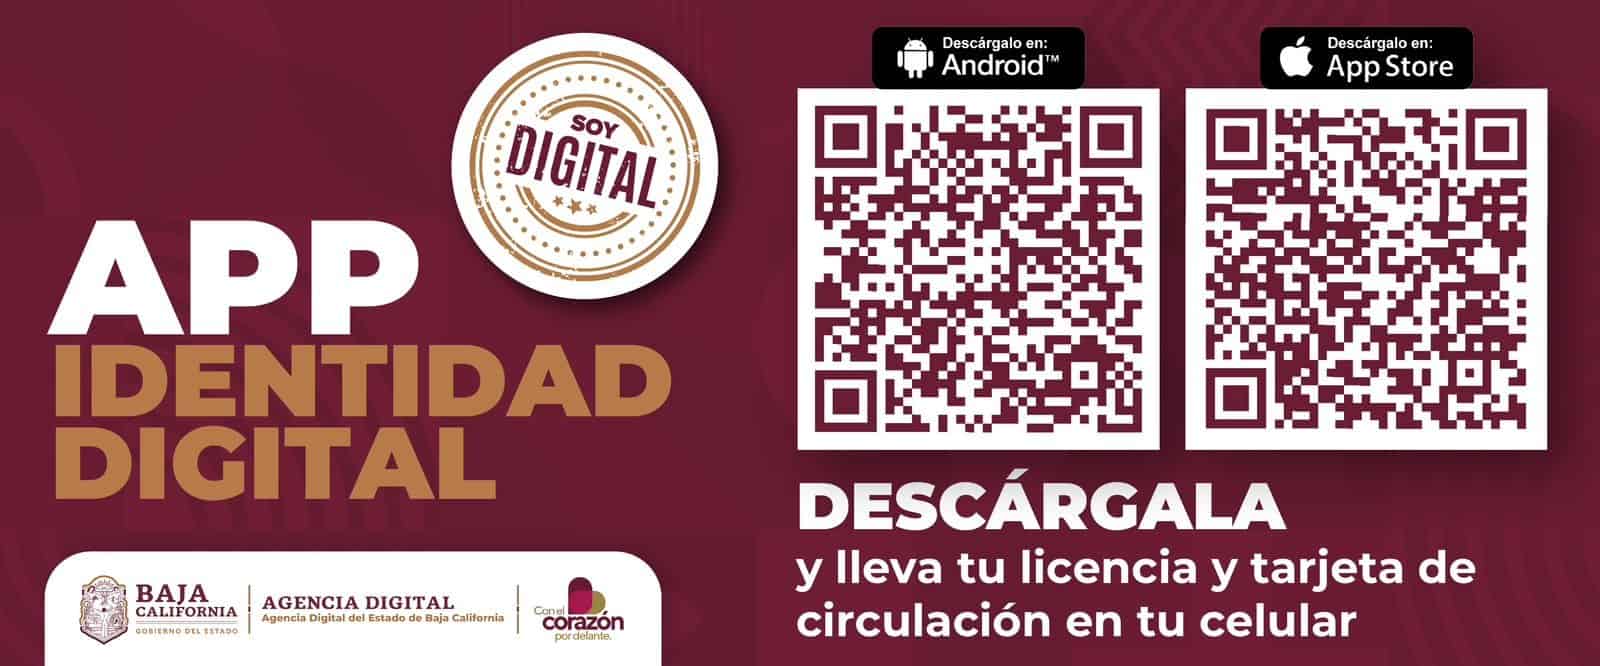 App Identidad Digital